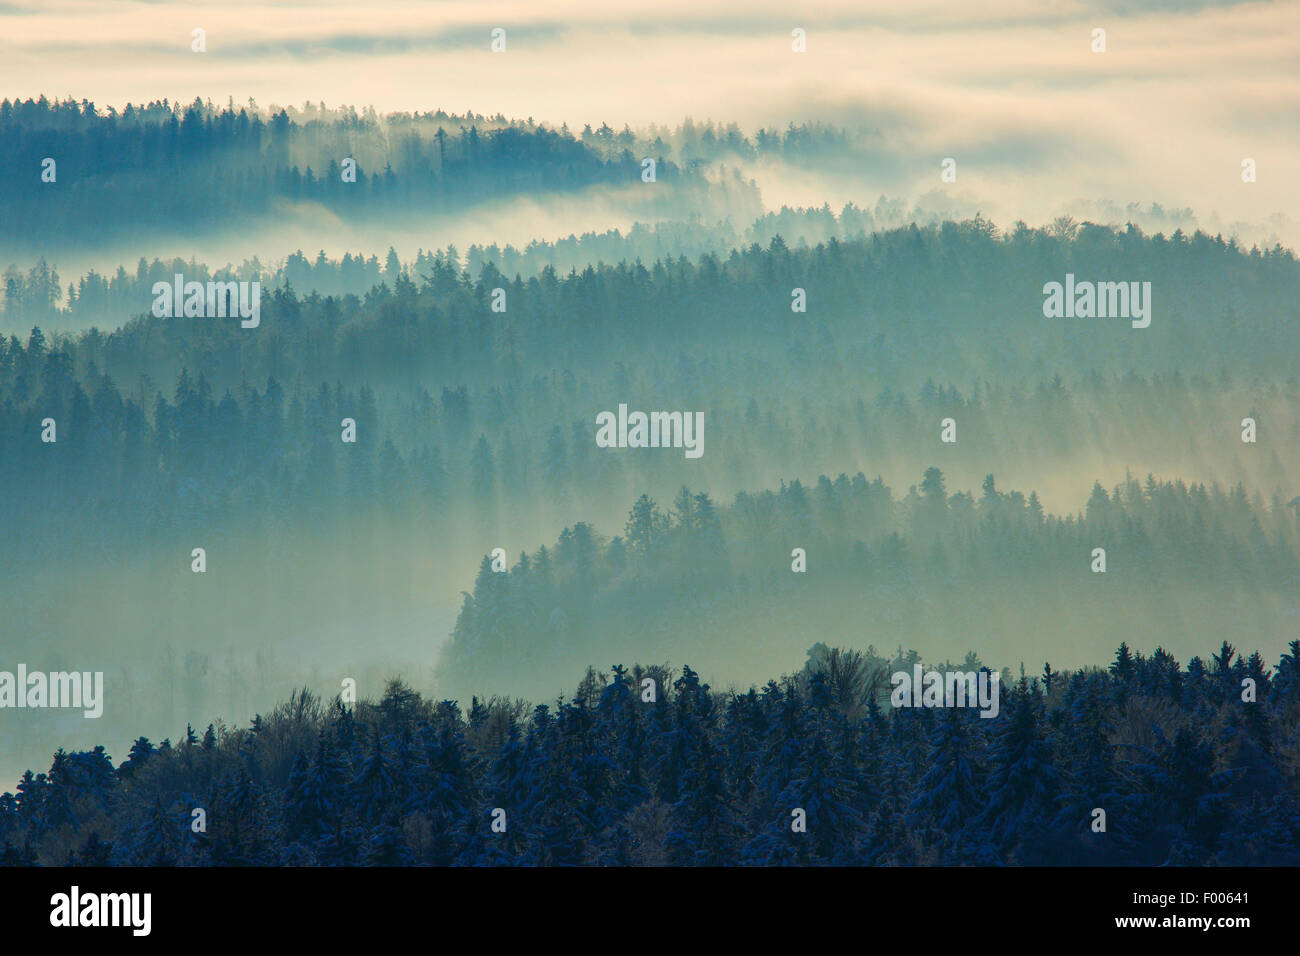 snowy fir forest with wafts of mist, Switzerland, Zuercher Oberland Stock Photo